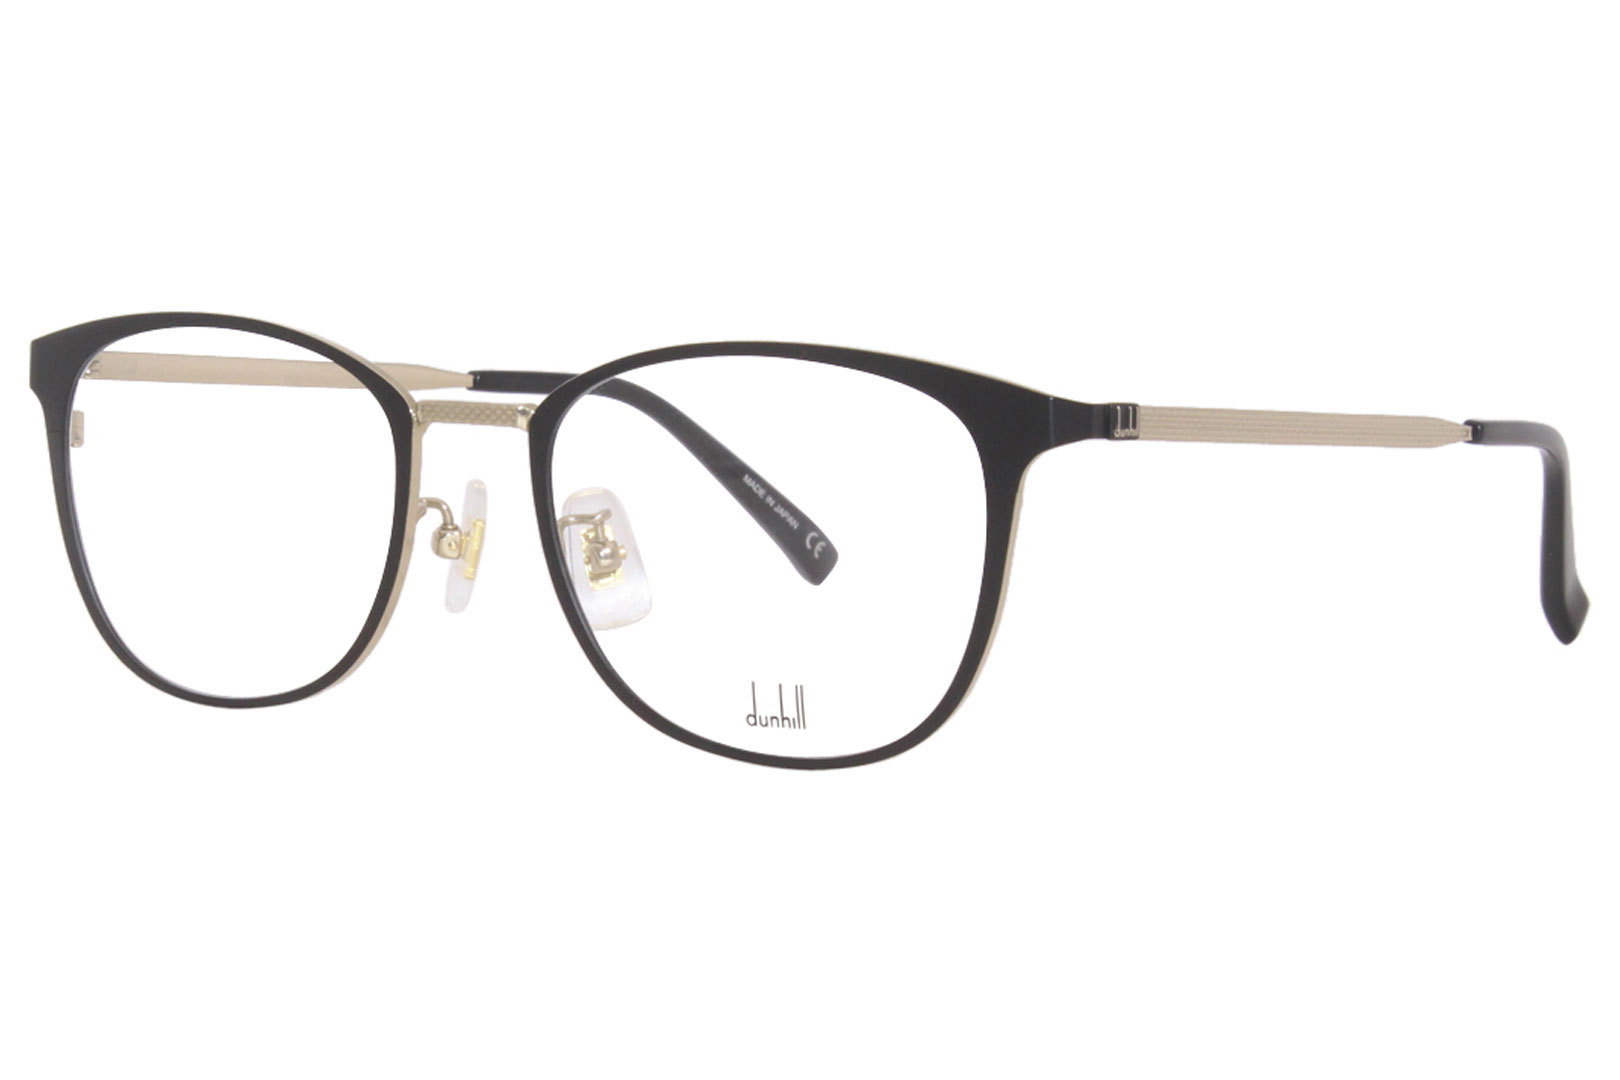 Dunhill DU0007O 004 Titanium Eyeglasses Men's Gold Full Rim Oval Shape ...